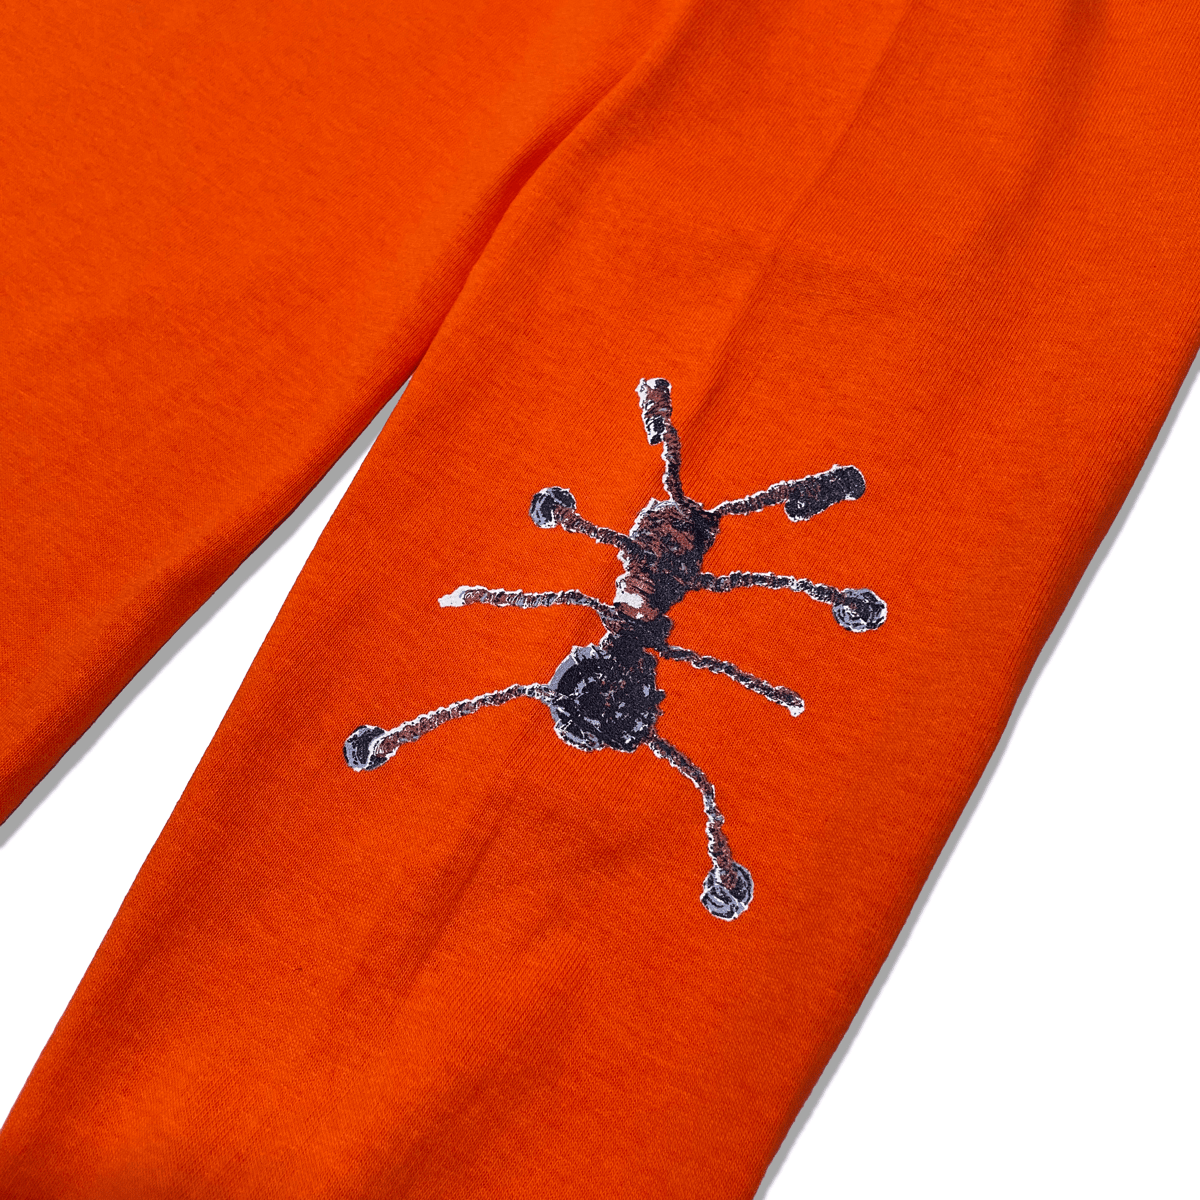 Image of Bug Life - Orange